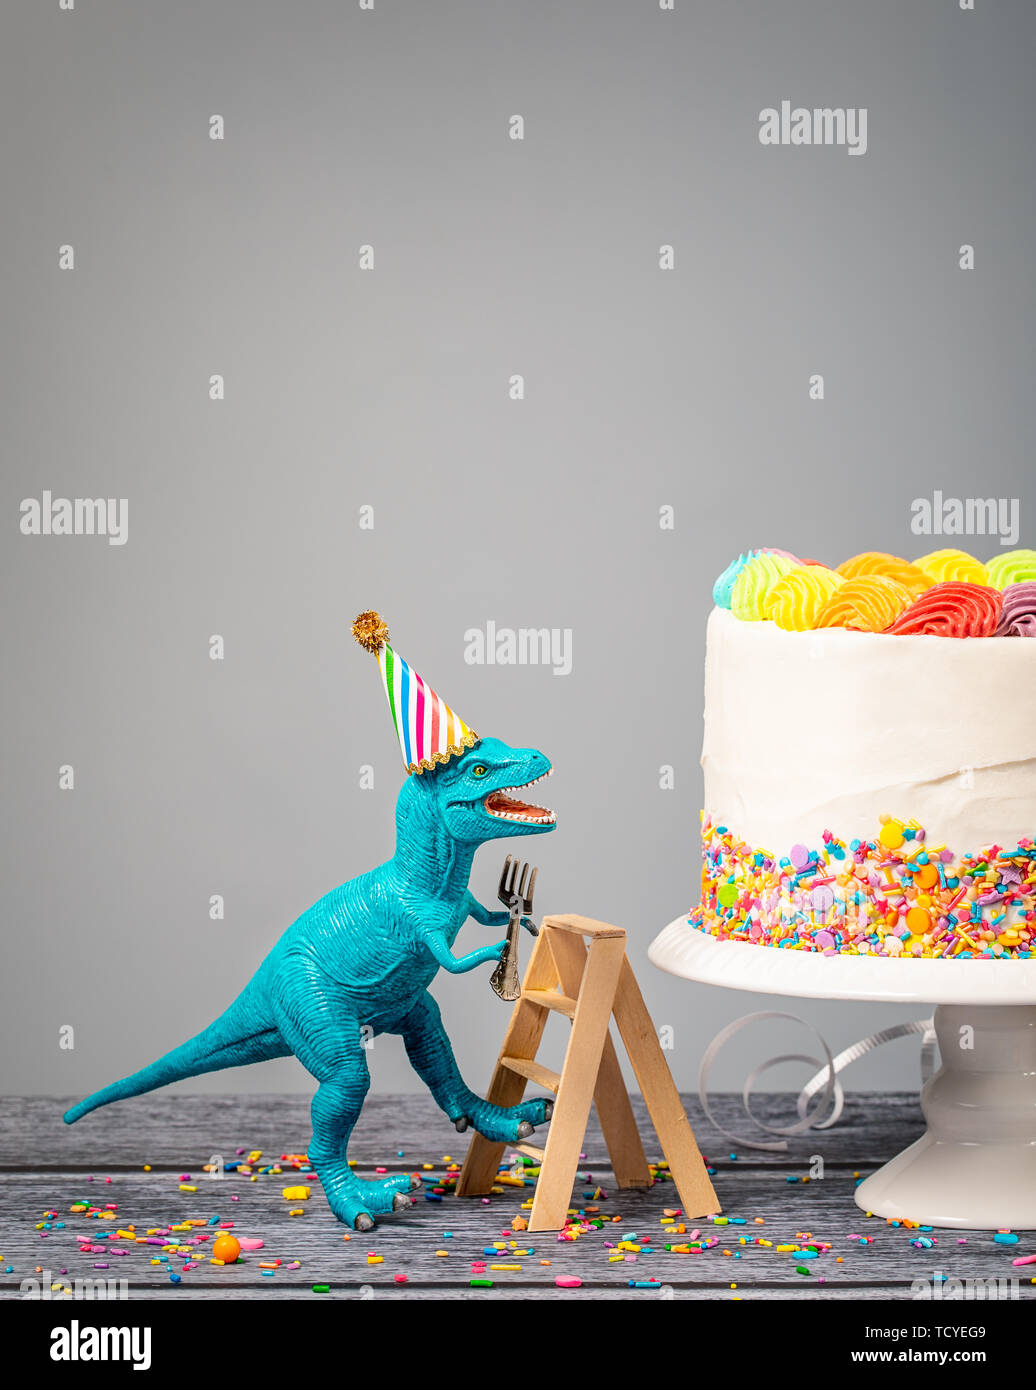 Dumme Spielzeug Dinosaurier einen Hut tragen und halten eine Gabel klettern eine Leiter einen Geburtstagskuchen auf grauem Hintergrund Stockfoto